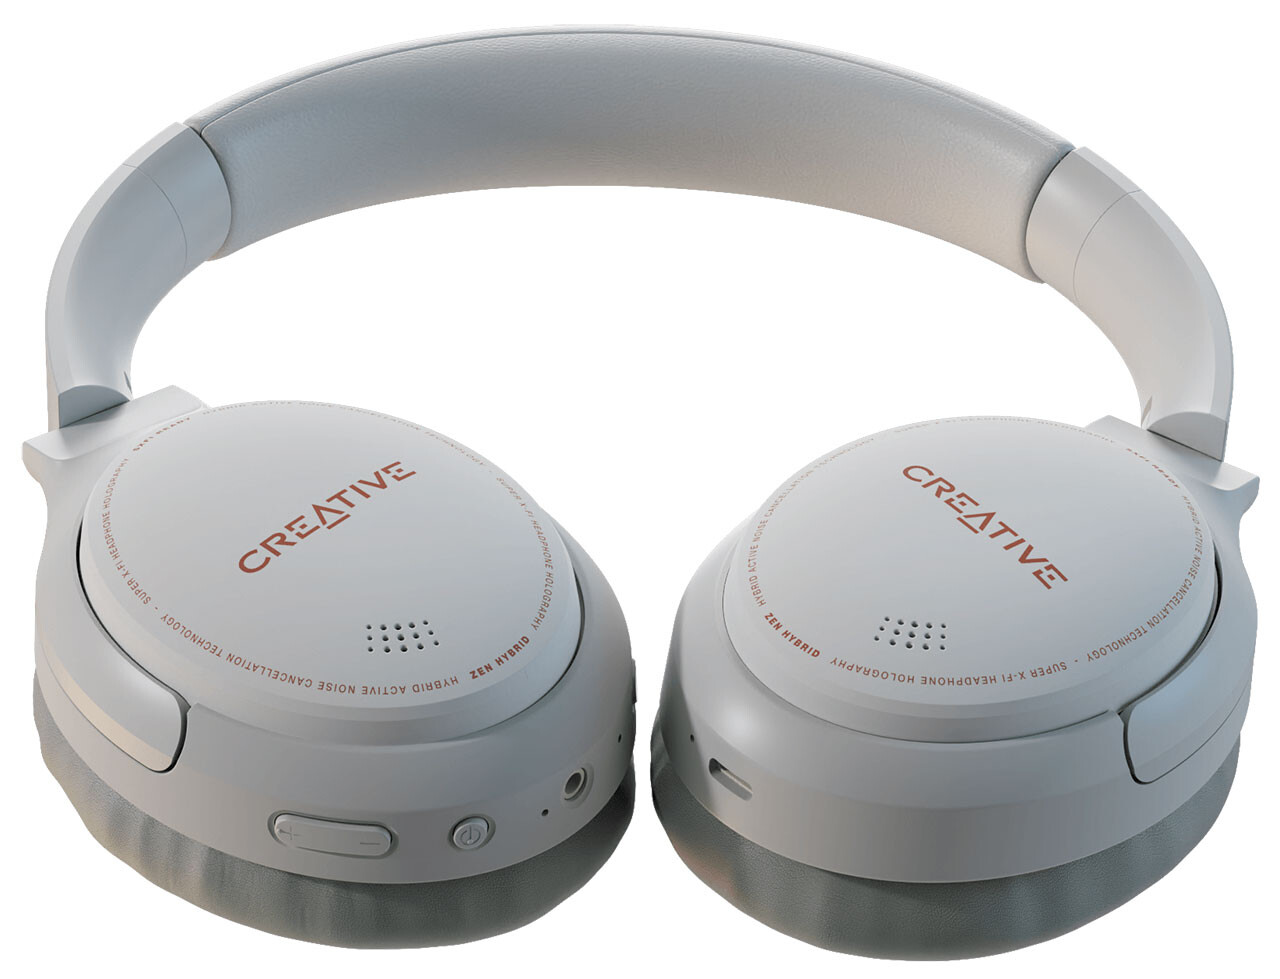 Creative wprowadza na rynek bezprzewodowe słuchawki Zen Hybrid z aktywną redukcją szumów